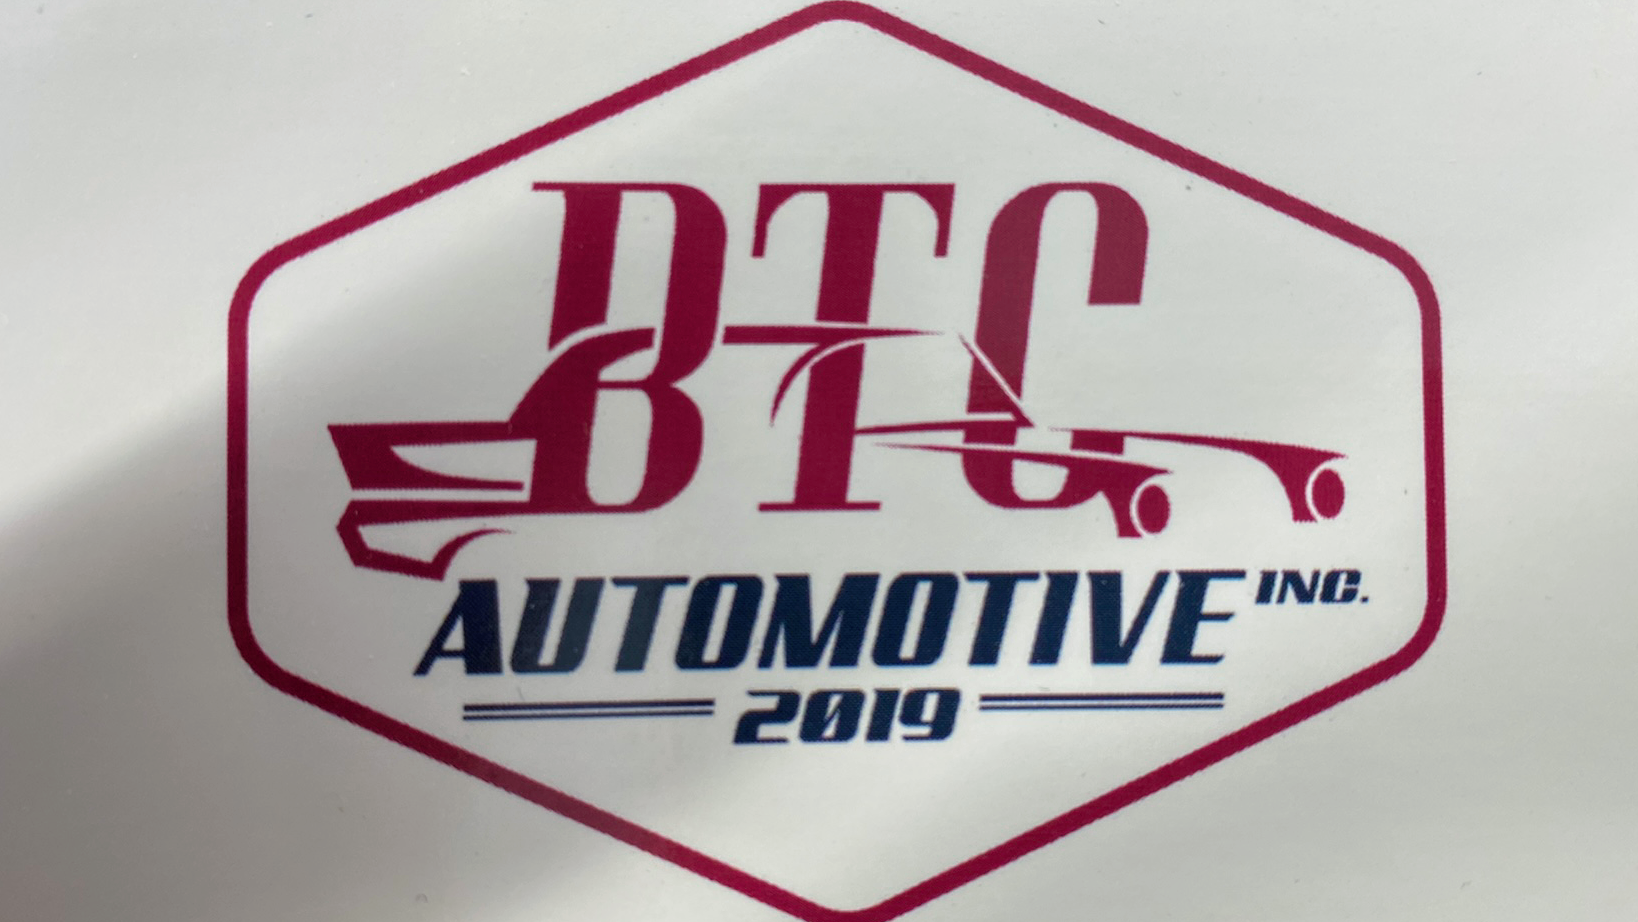 Btc Automotive 2019 inc 202 Griffin Rd, Balgonie Saskatchewan S0G 0E0